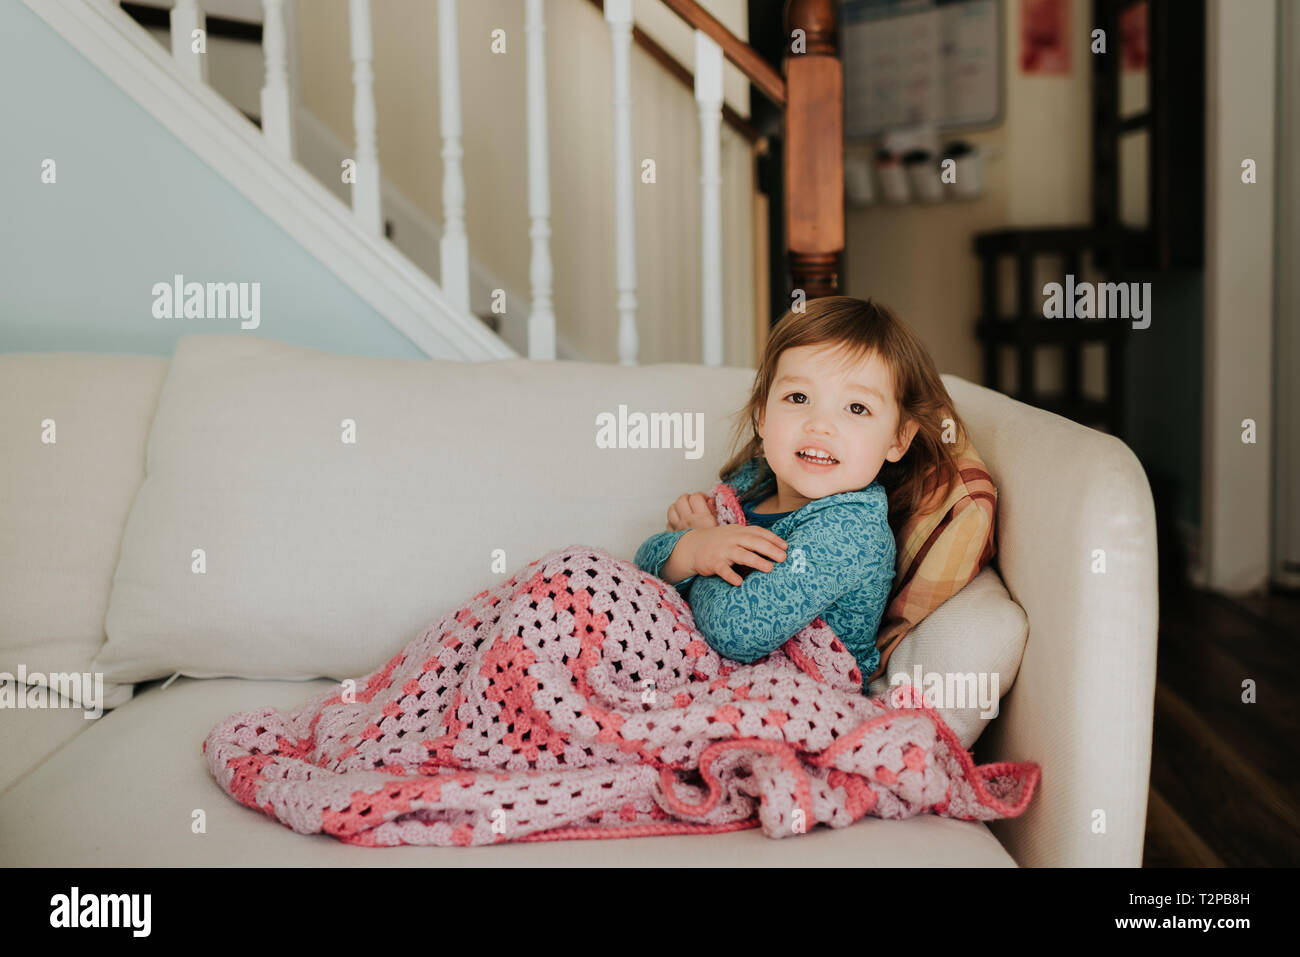 Female toddler sur canapé avec une couverture, portrait Banque D'Images